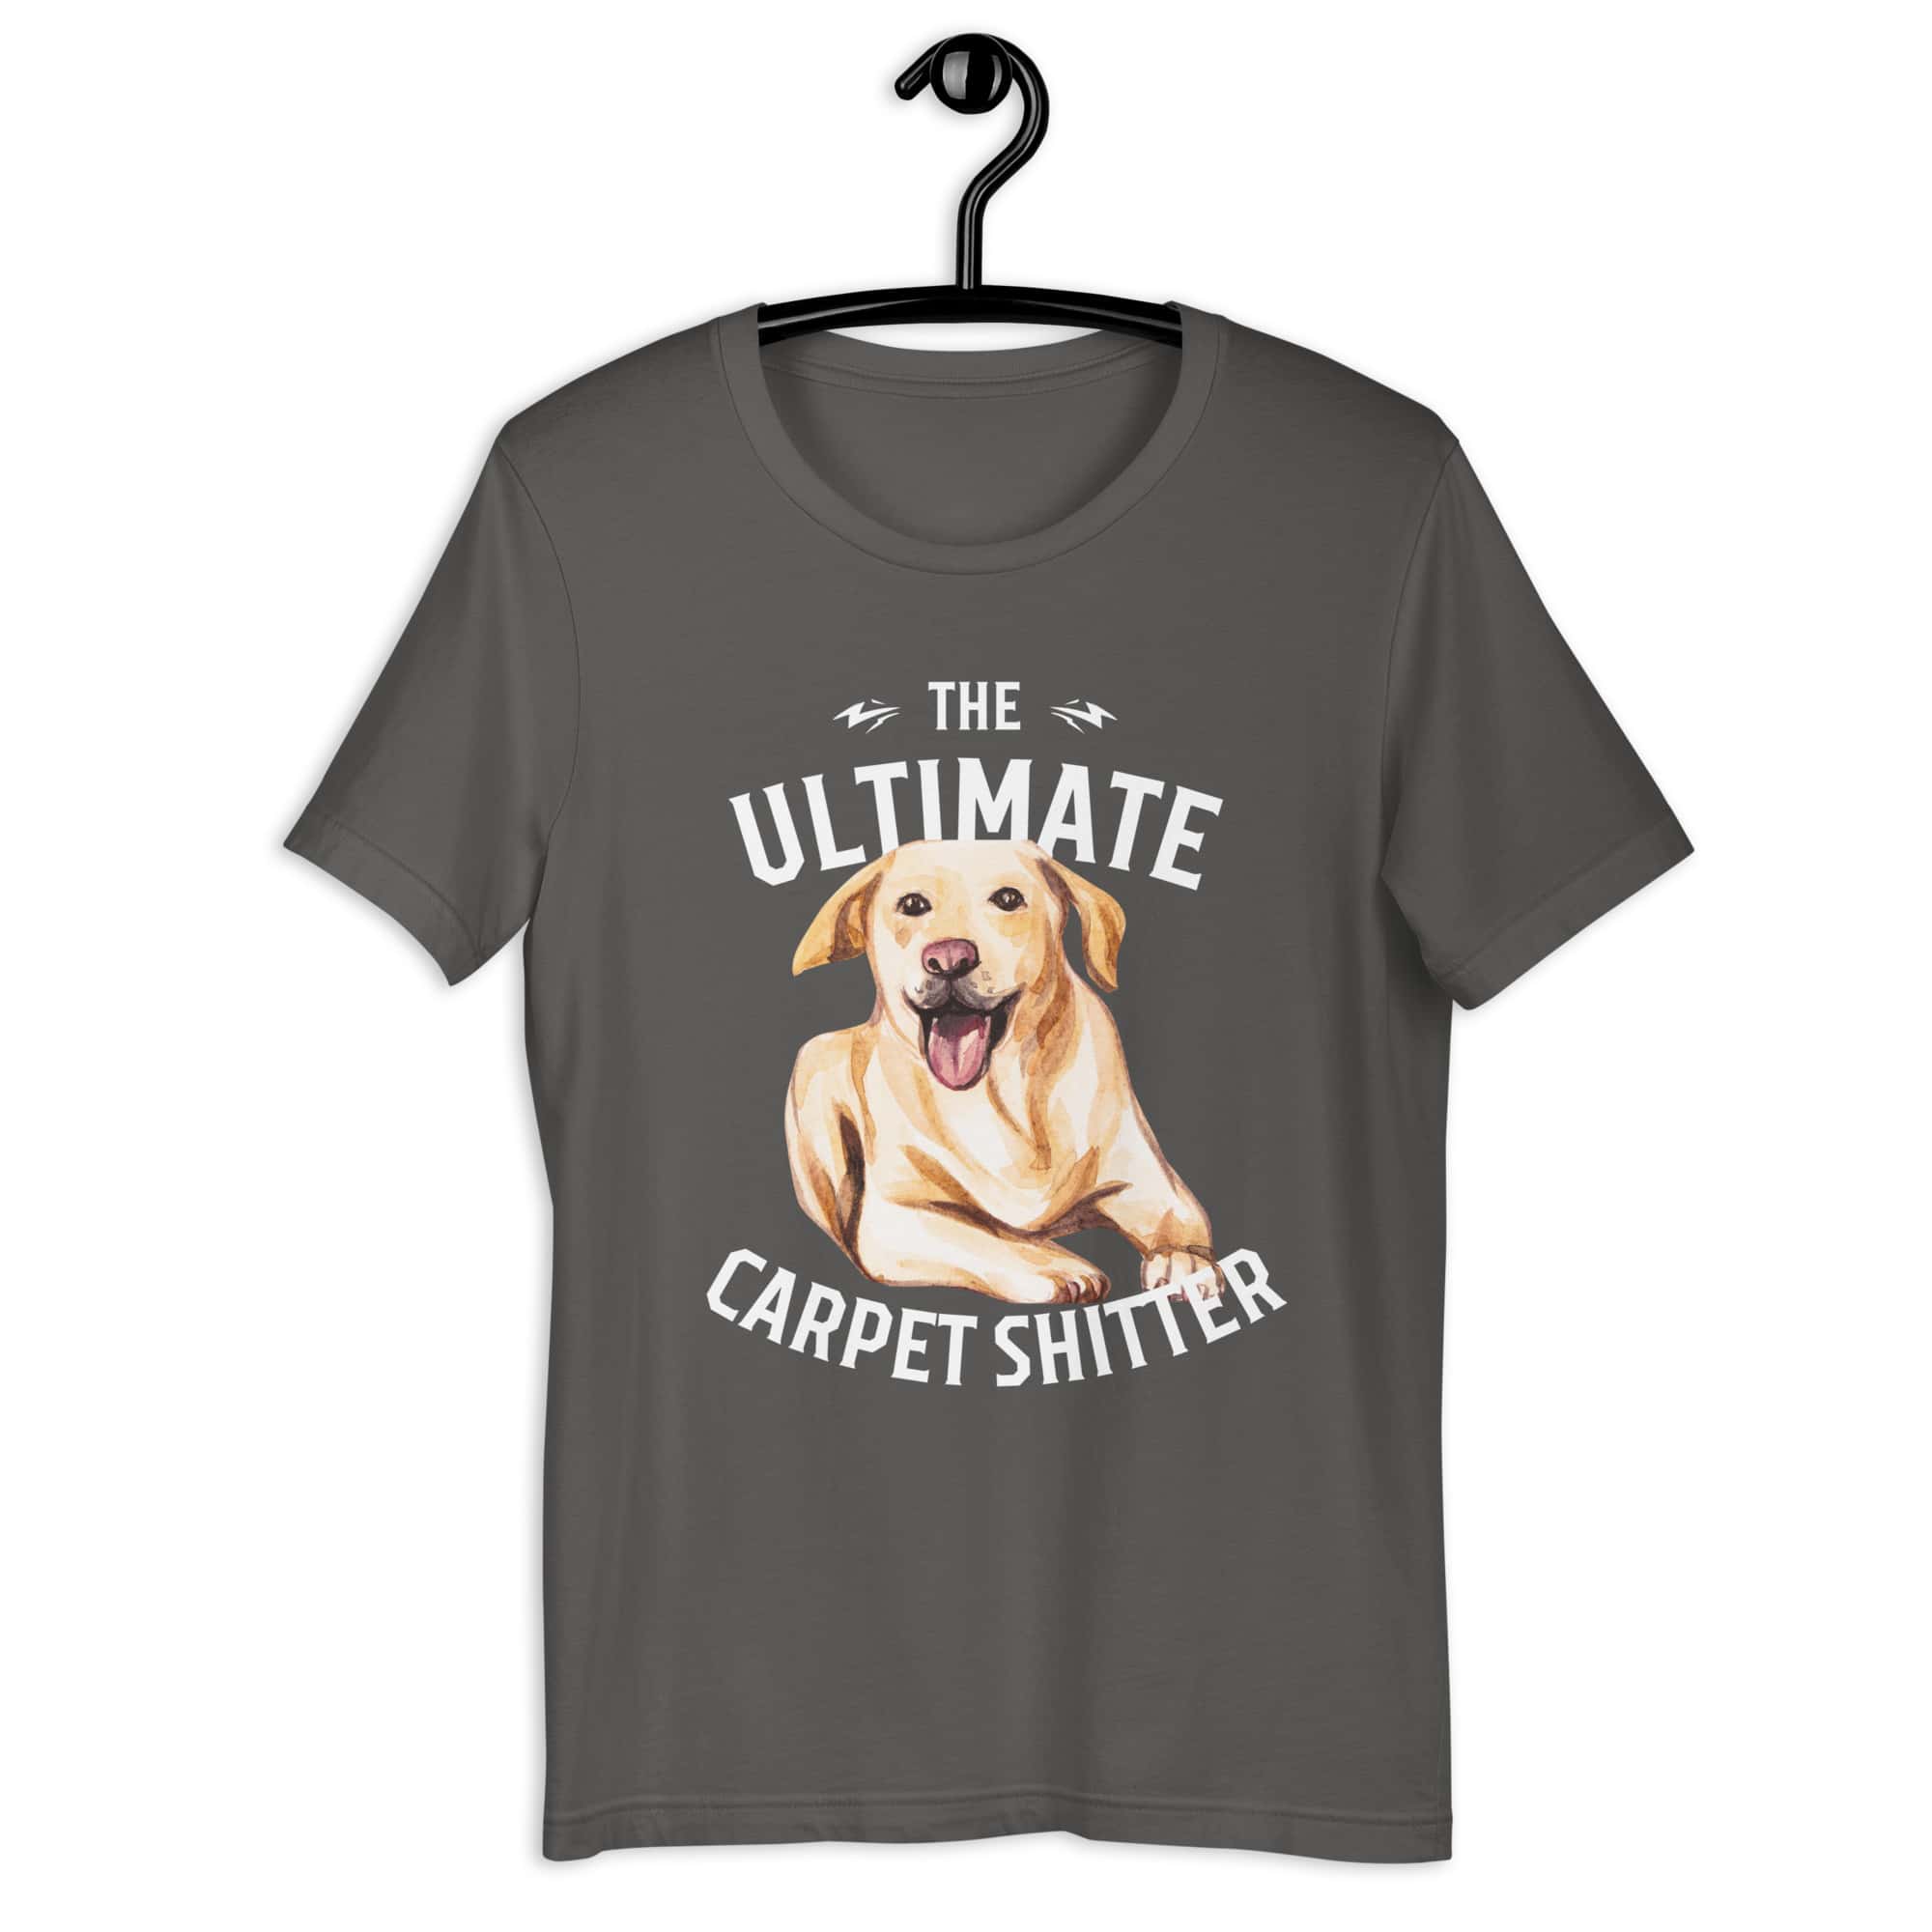 The Ultimate Carpet Shitter Funny Golden Retriever Unisex T-Shirt gray